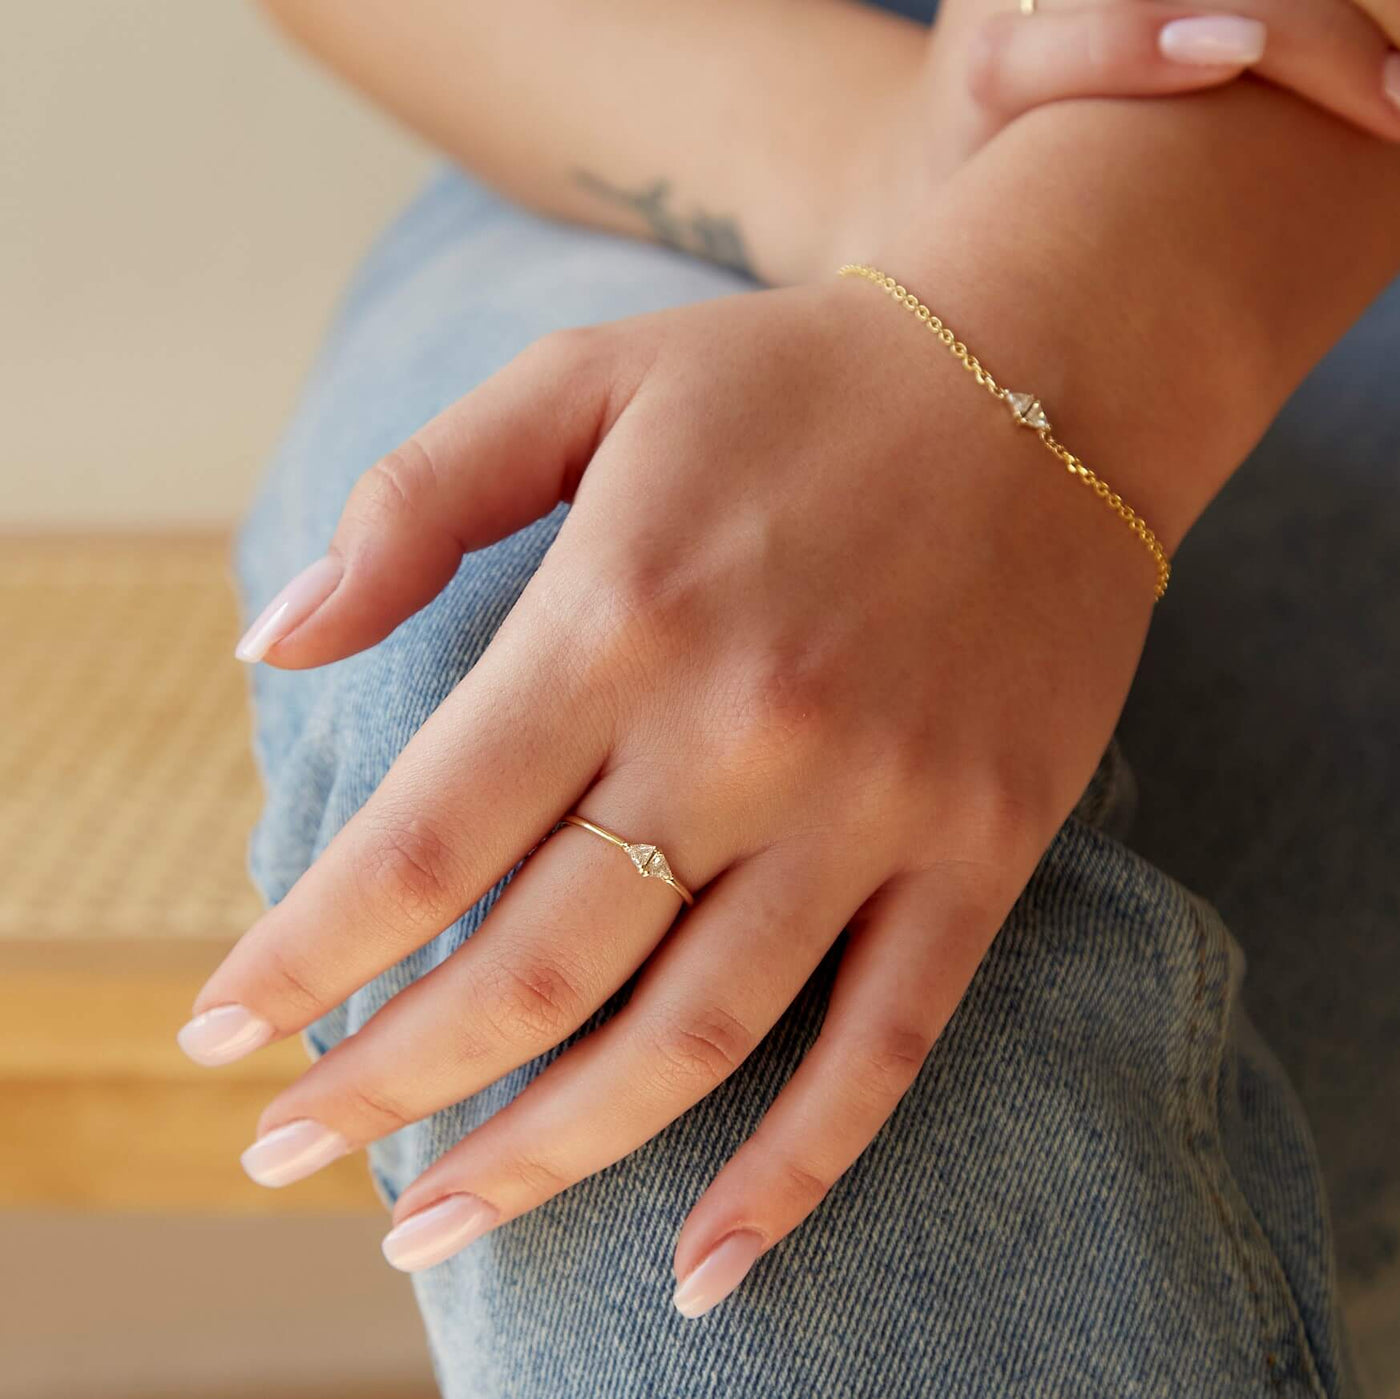 טבעת דאבל היילי יהלומים זהב 14K Rings 